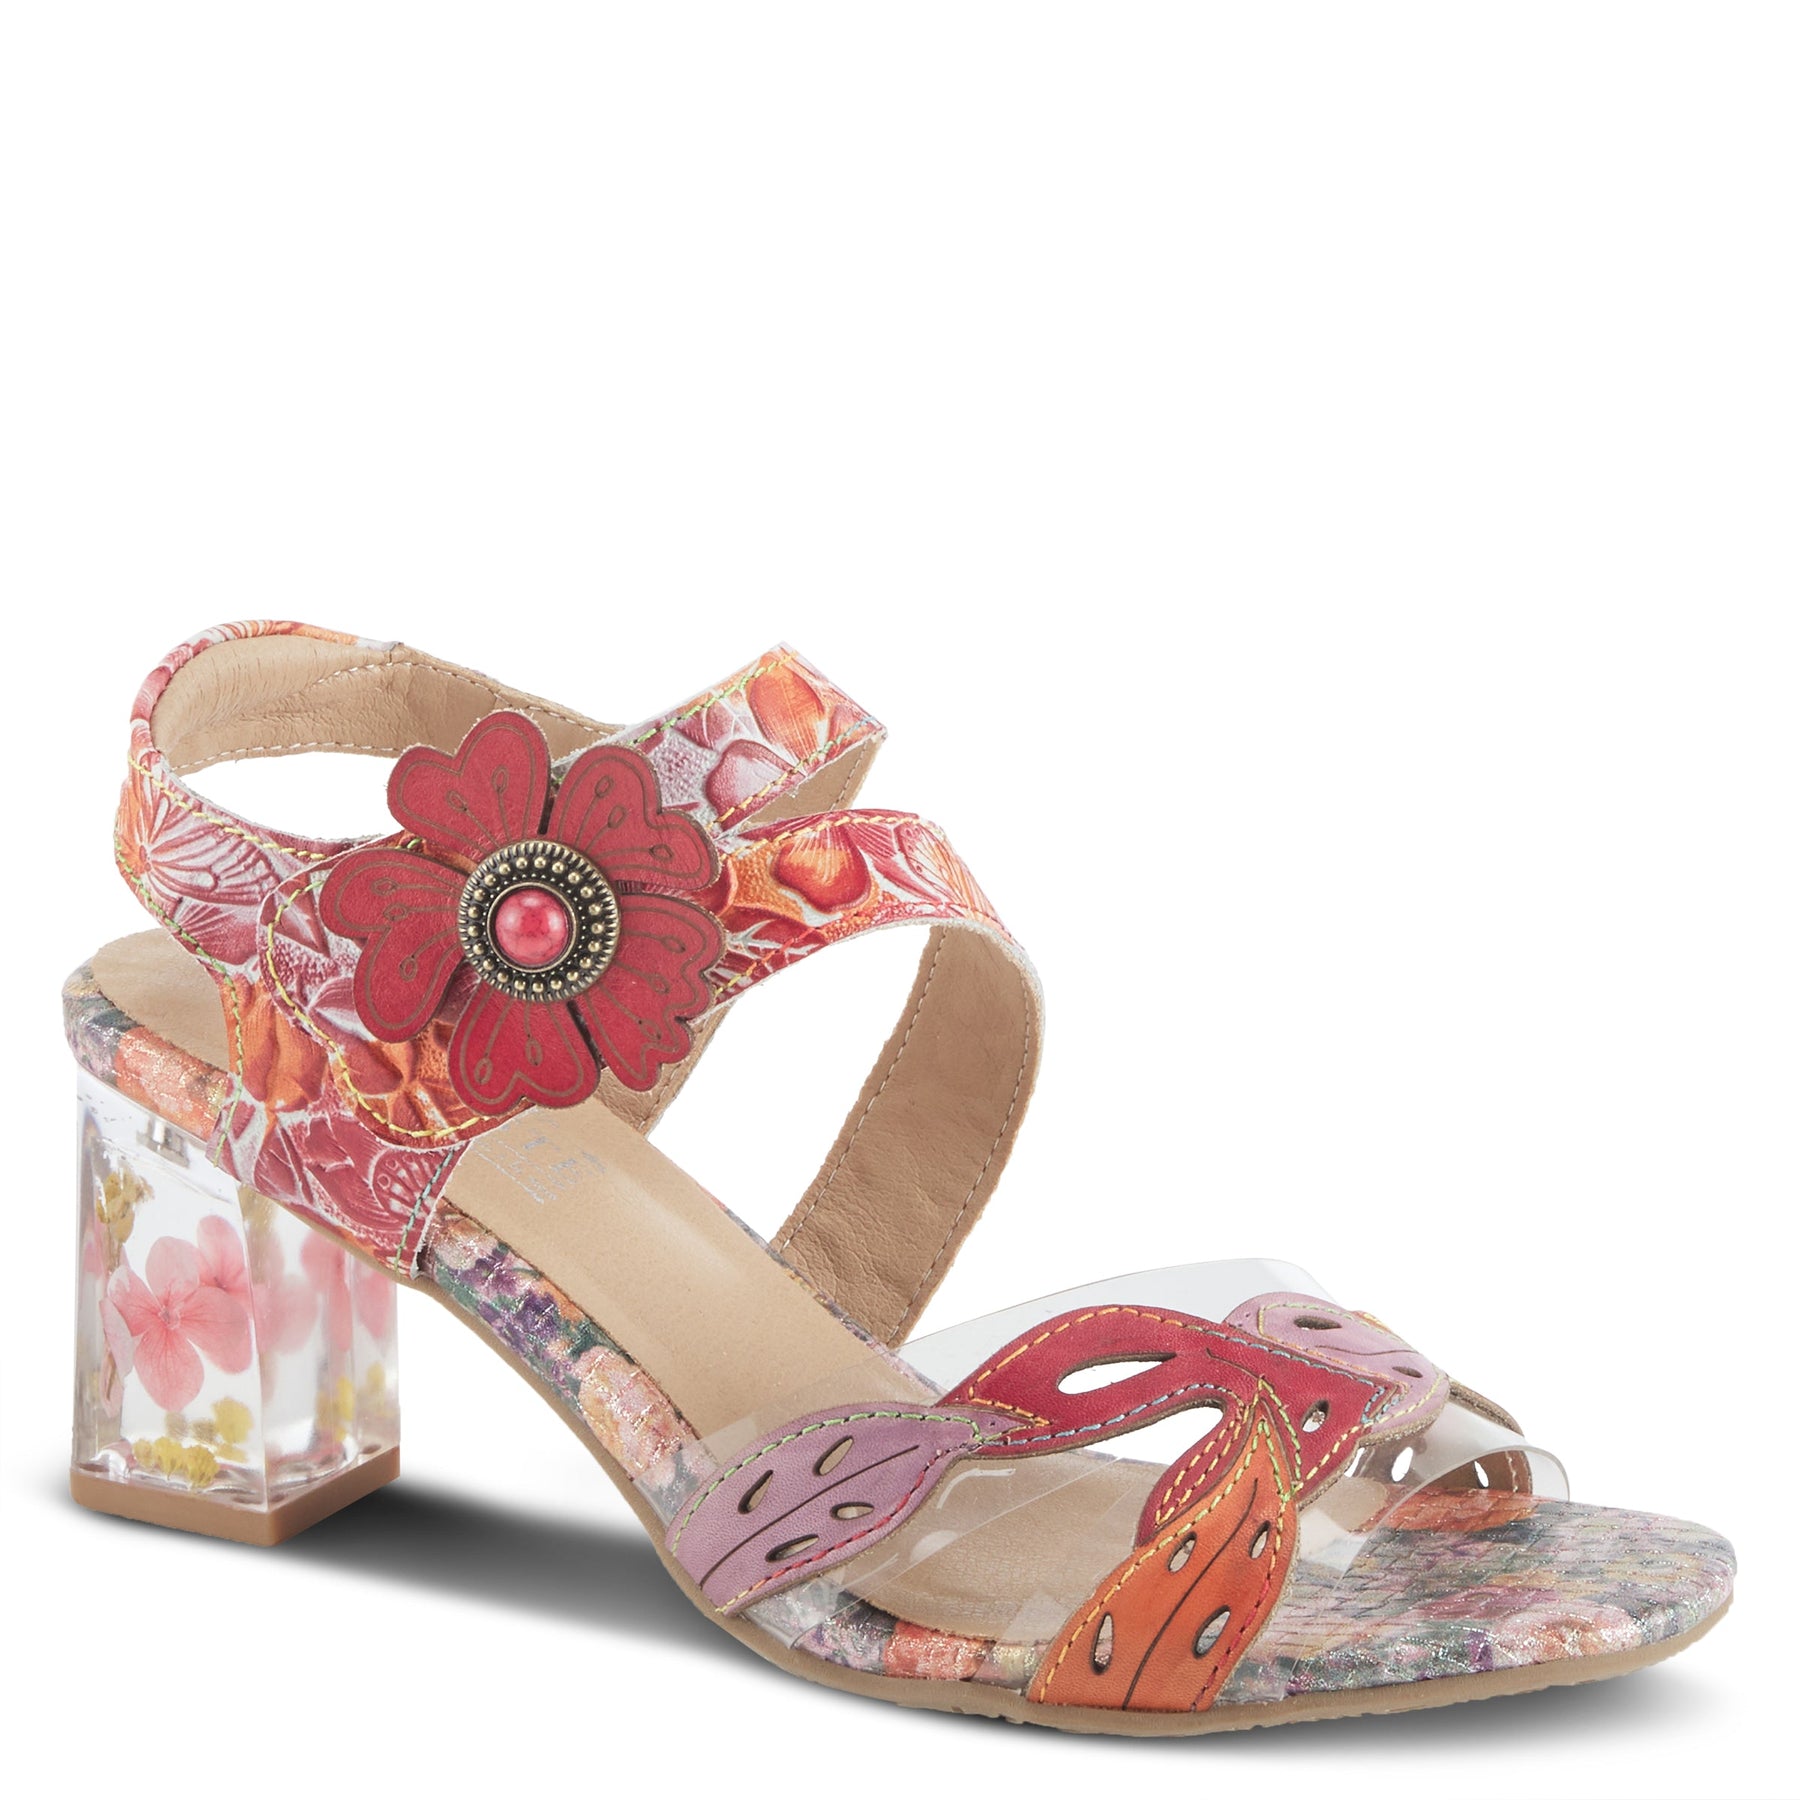 L'ARTISTE CASELLE SANDALS by L'ARTISTE – Spring Step Shoes